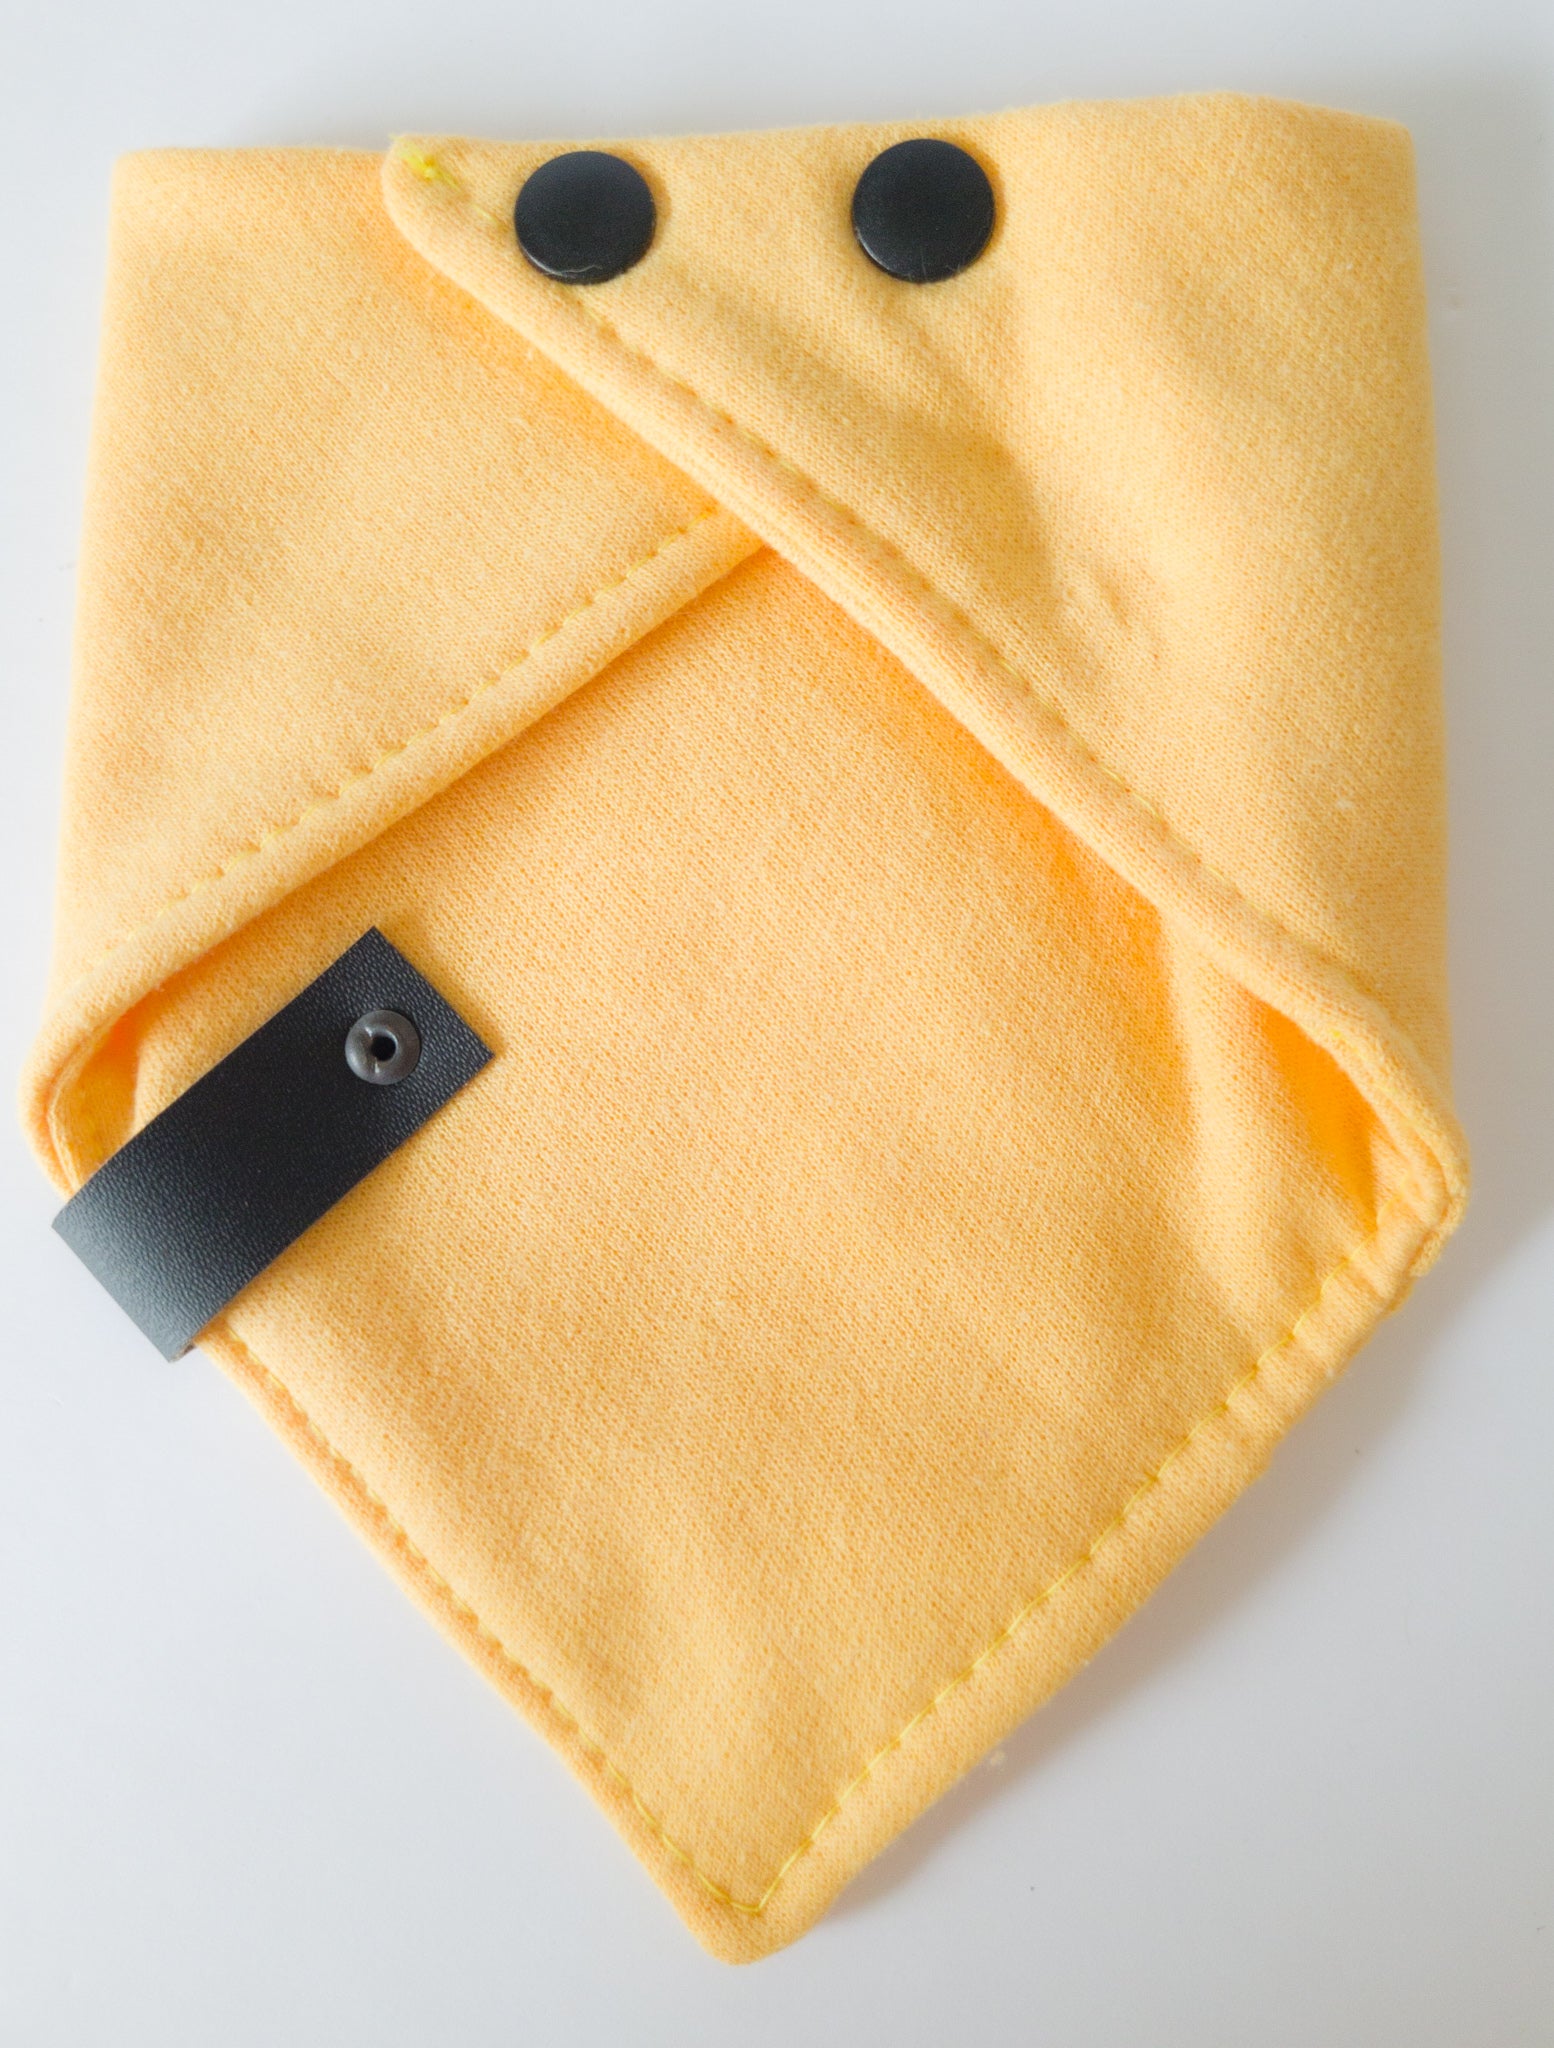 Verso du bandanas de coton ouaté de couleur jaune blé avec étiquette de cuir végan noir et boutons pression noir mats en plastiques.